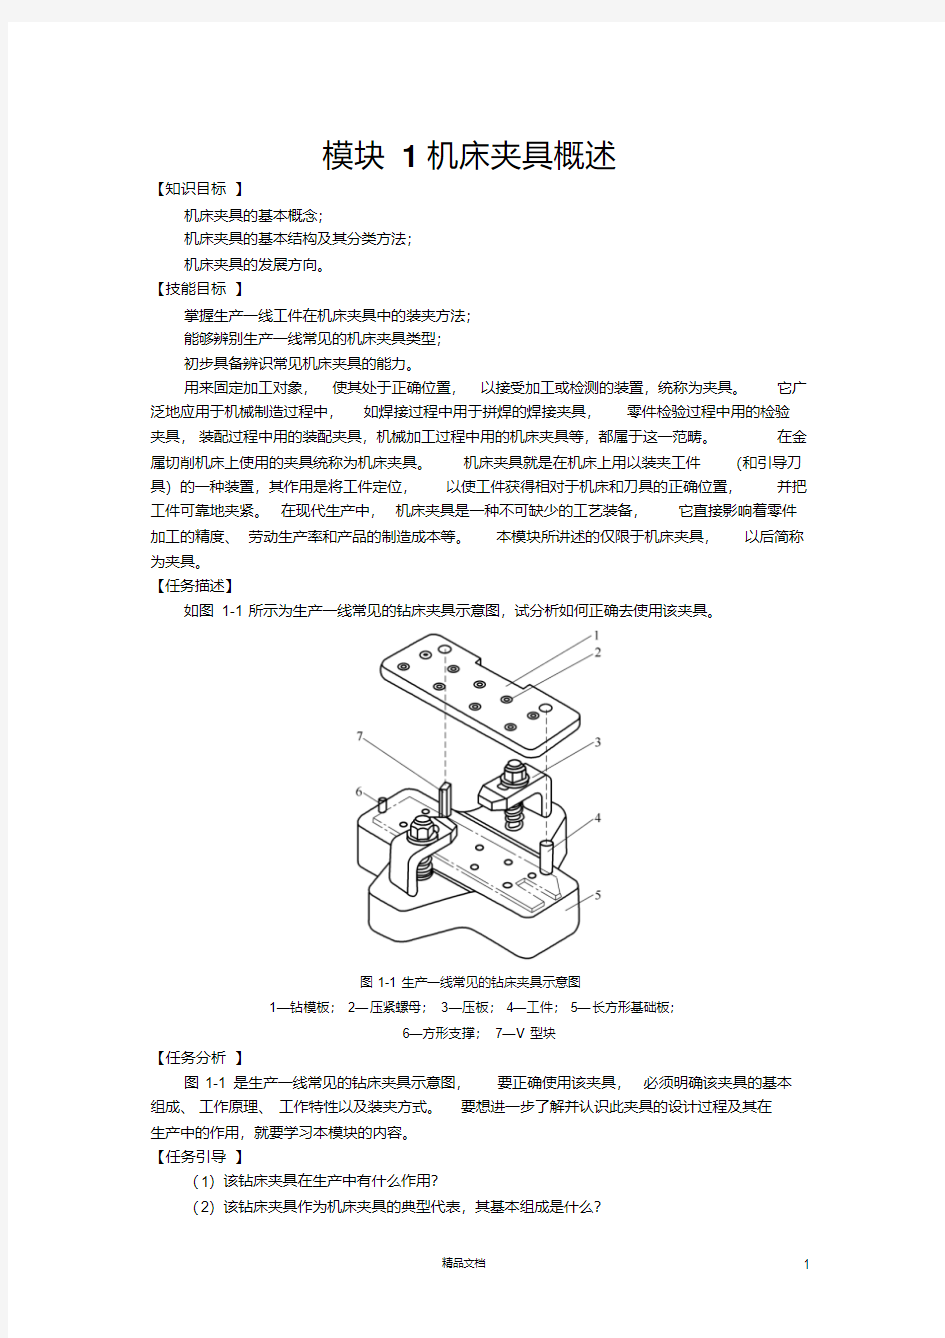 《机床夹具设计》机床夹具概述.pdf